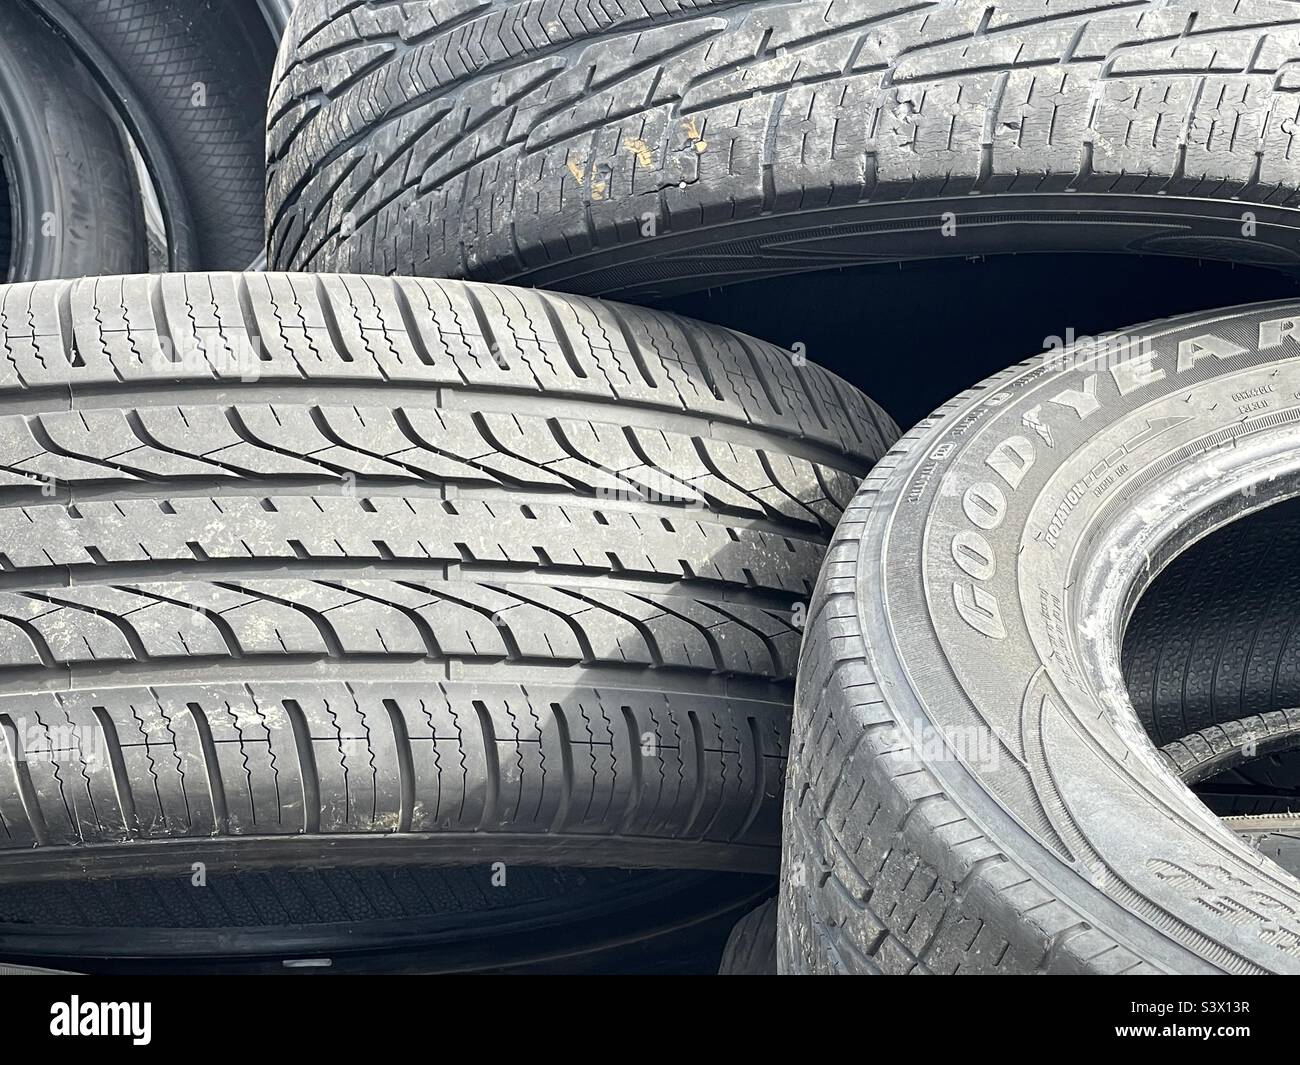 Haufen alter und gebrauchter Reifen hinter einem Autogeschäft in West Valley City, Utah, USA. Obwohl es sich um ein weltliches Thema handelt, fiel mir dieses mit all der Form und Textur auf. Ich denke, es macht eine interessante Zusammenfassung. Stockfoto